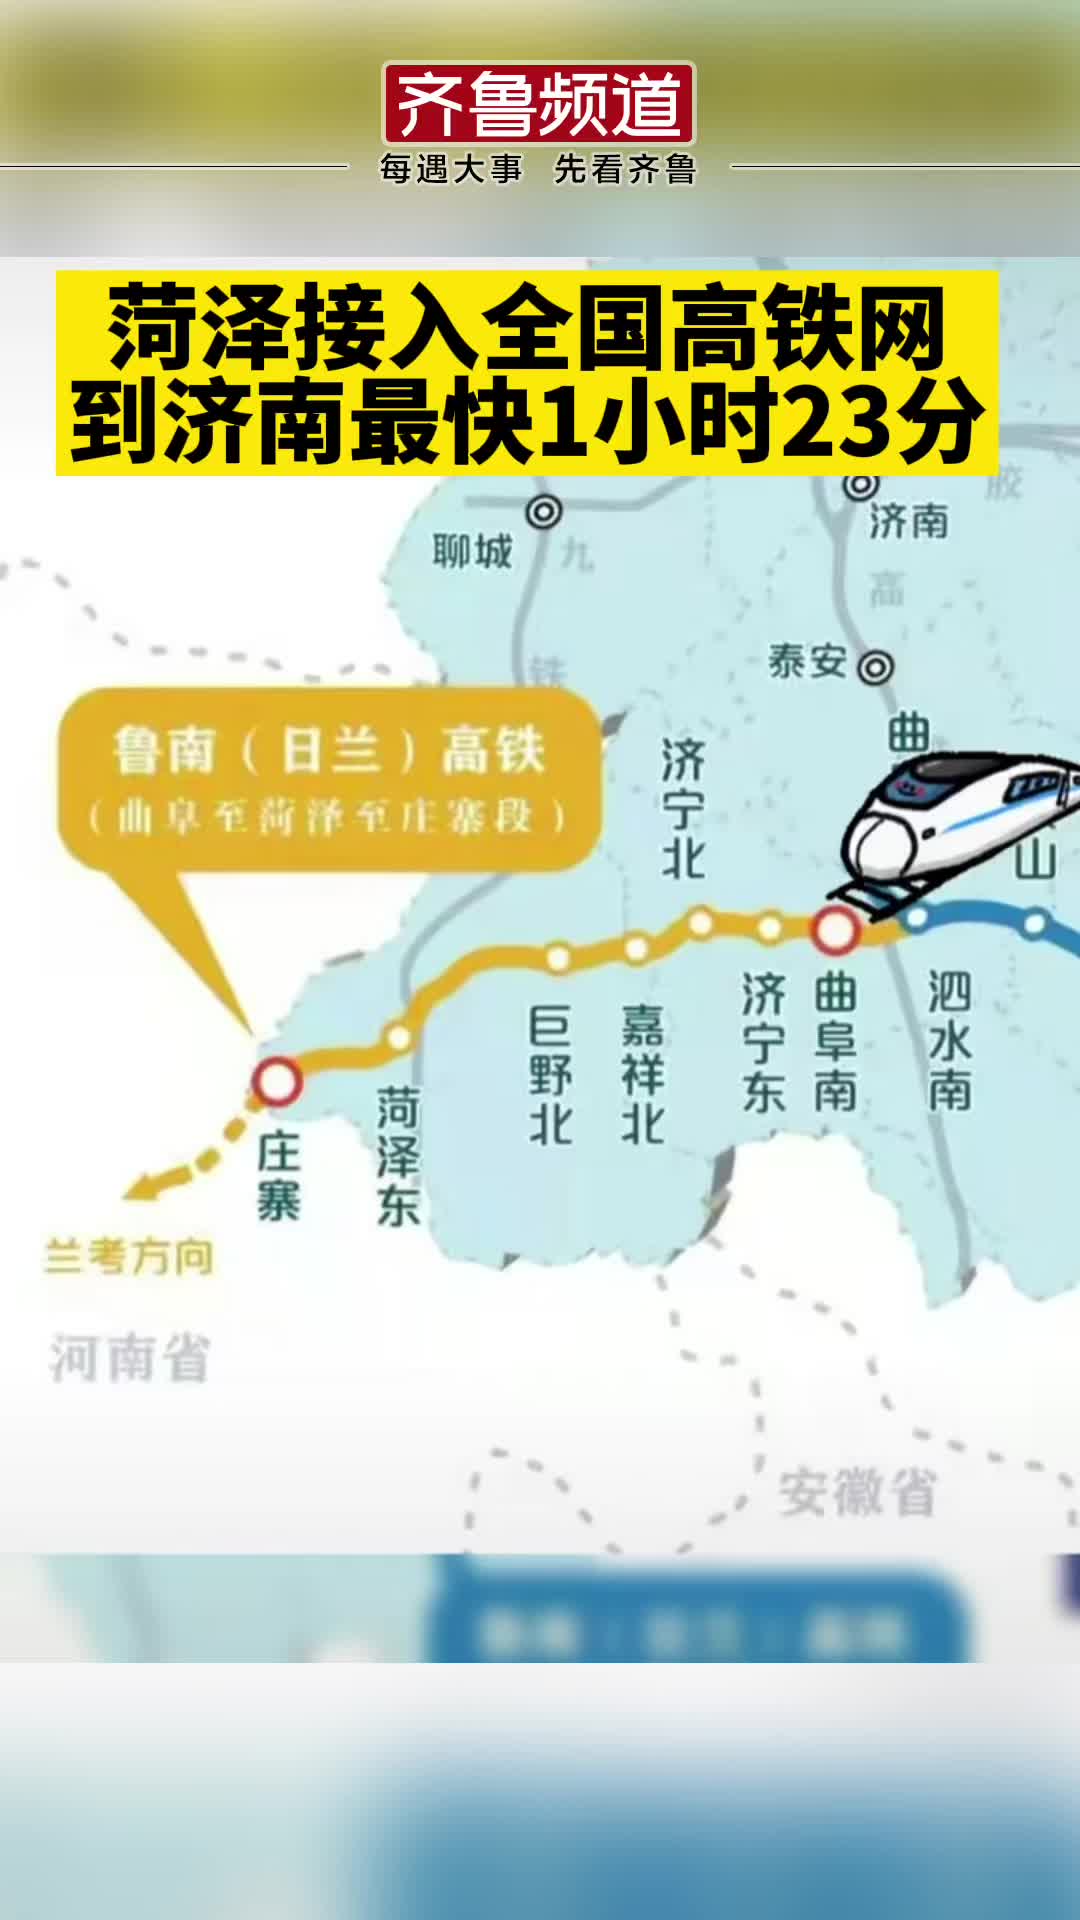 山东菏泽接入全国高铁网菏泽到北京最快3小时